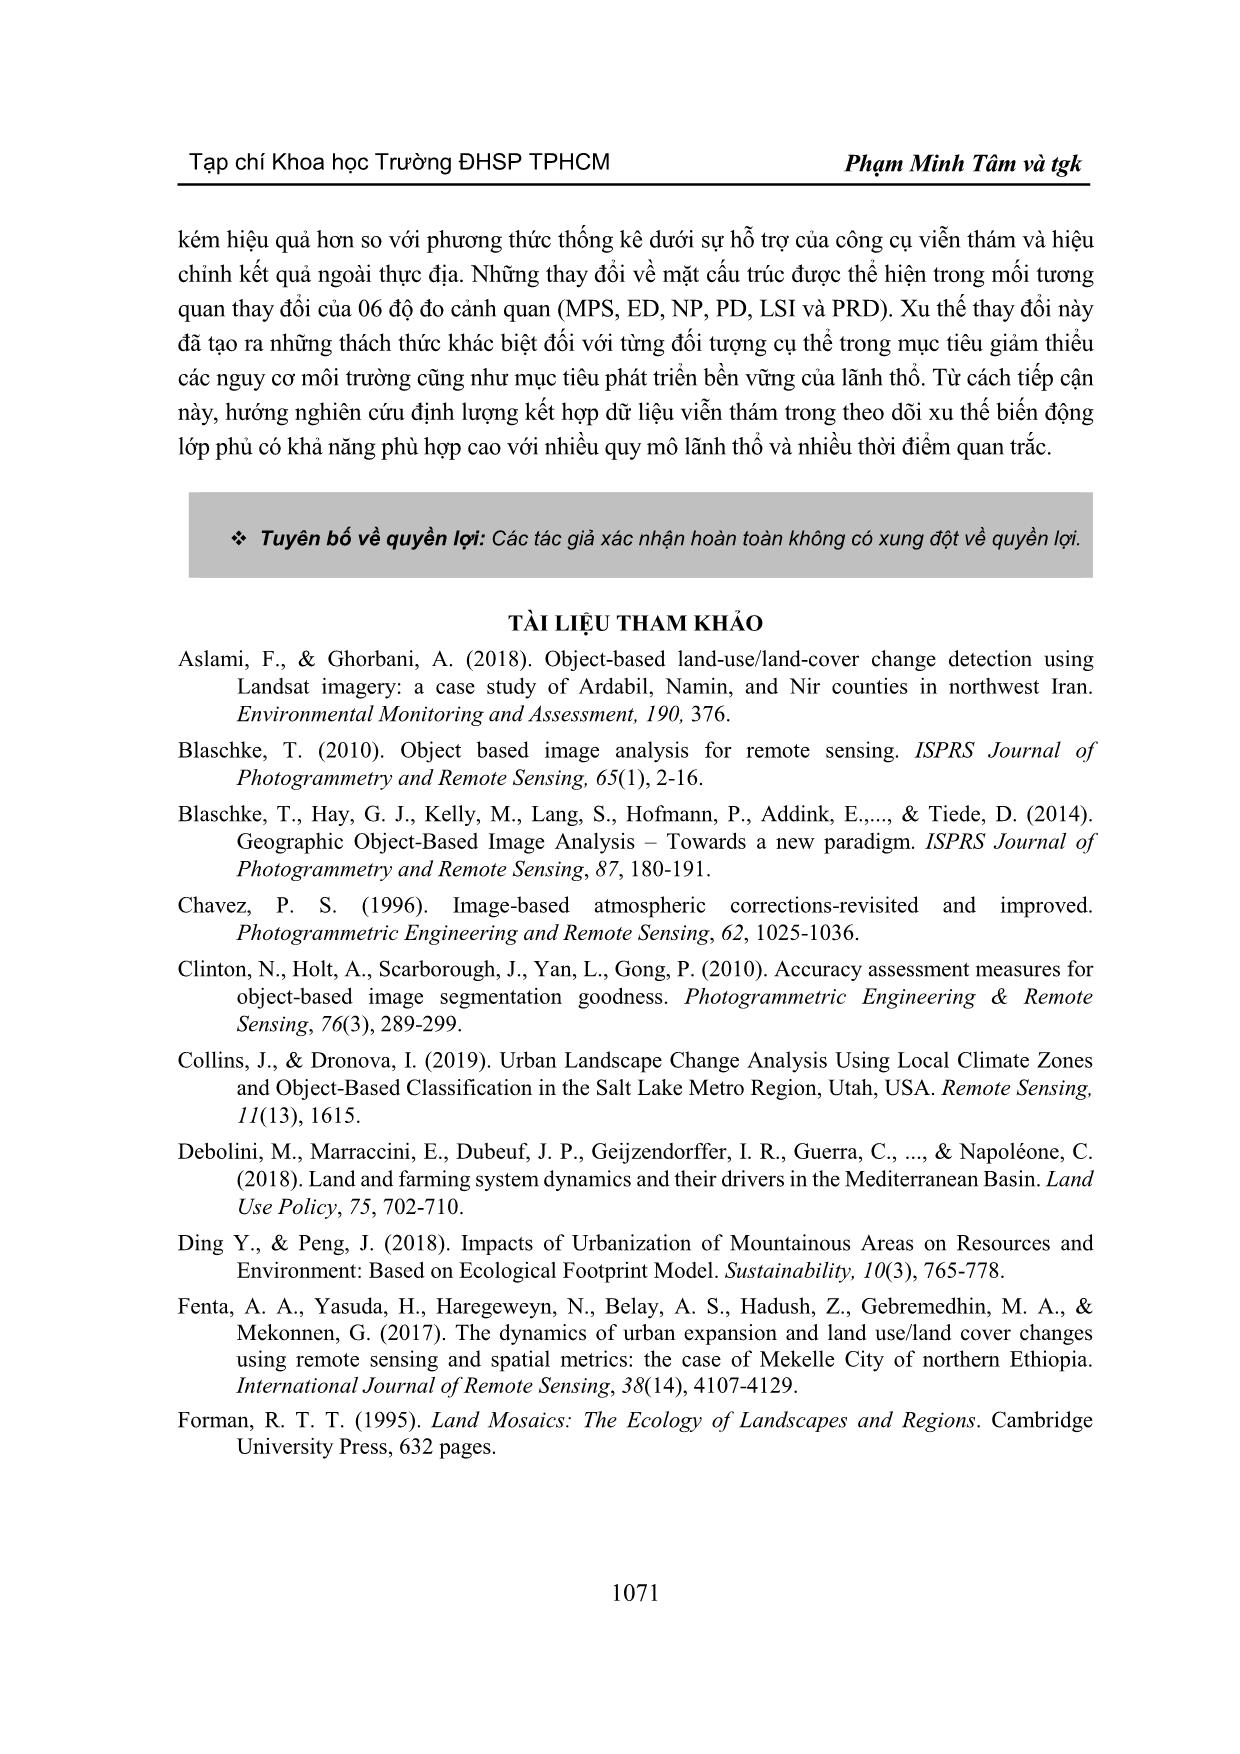 Ứng dụng viễn thám và độ đo cảnh quan trong phân tích xu thế biến động sử dụng đất khu vực huyện Văn Chấn, tỉnh Yên Bái giai đoạn 2008-2017 trang 9